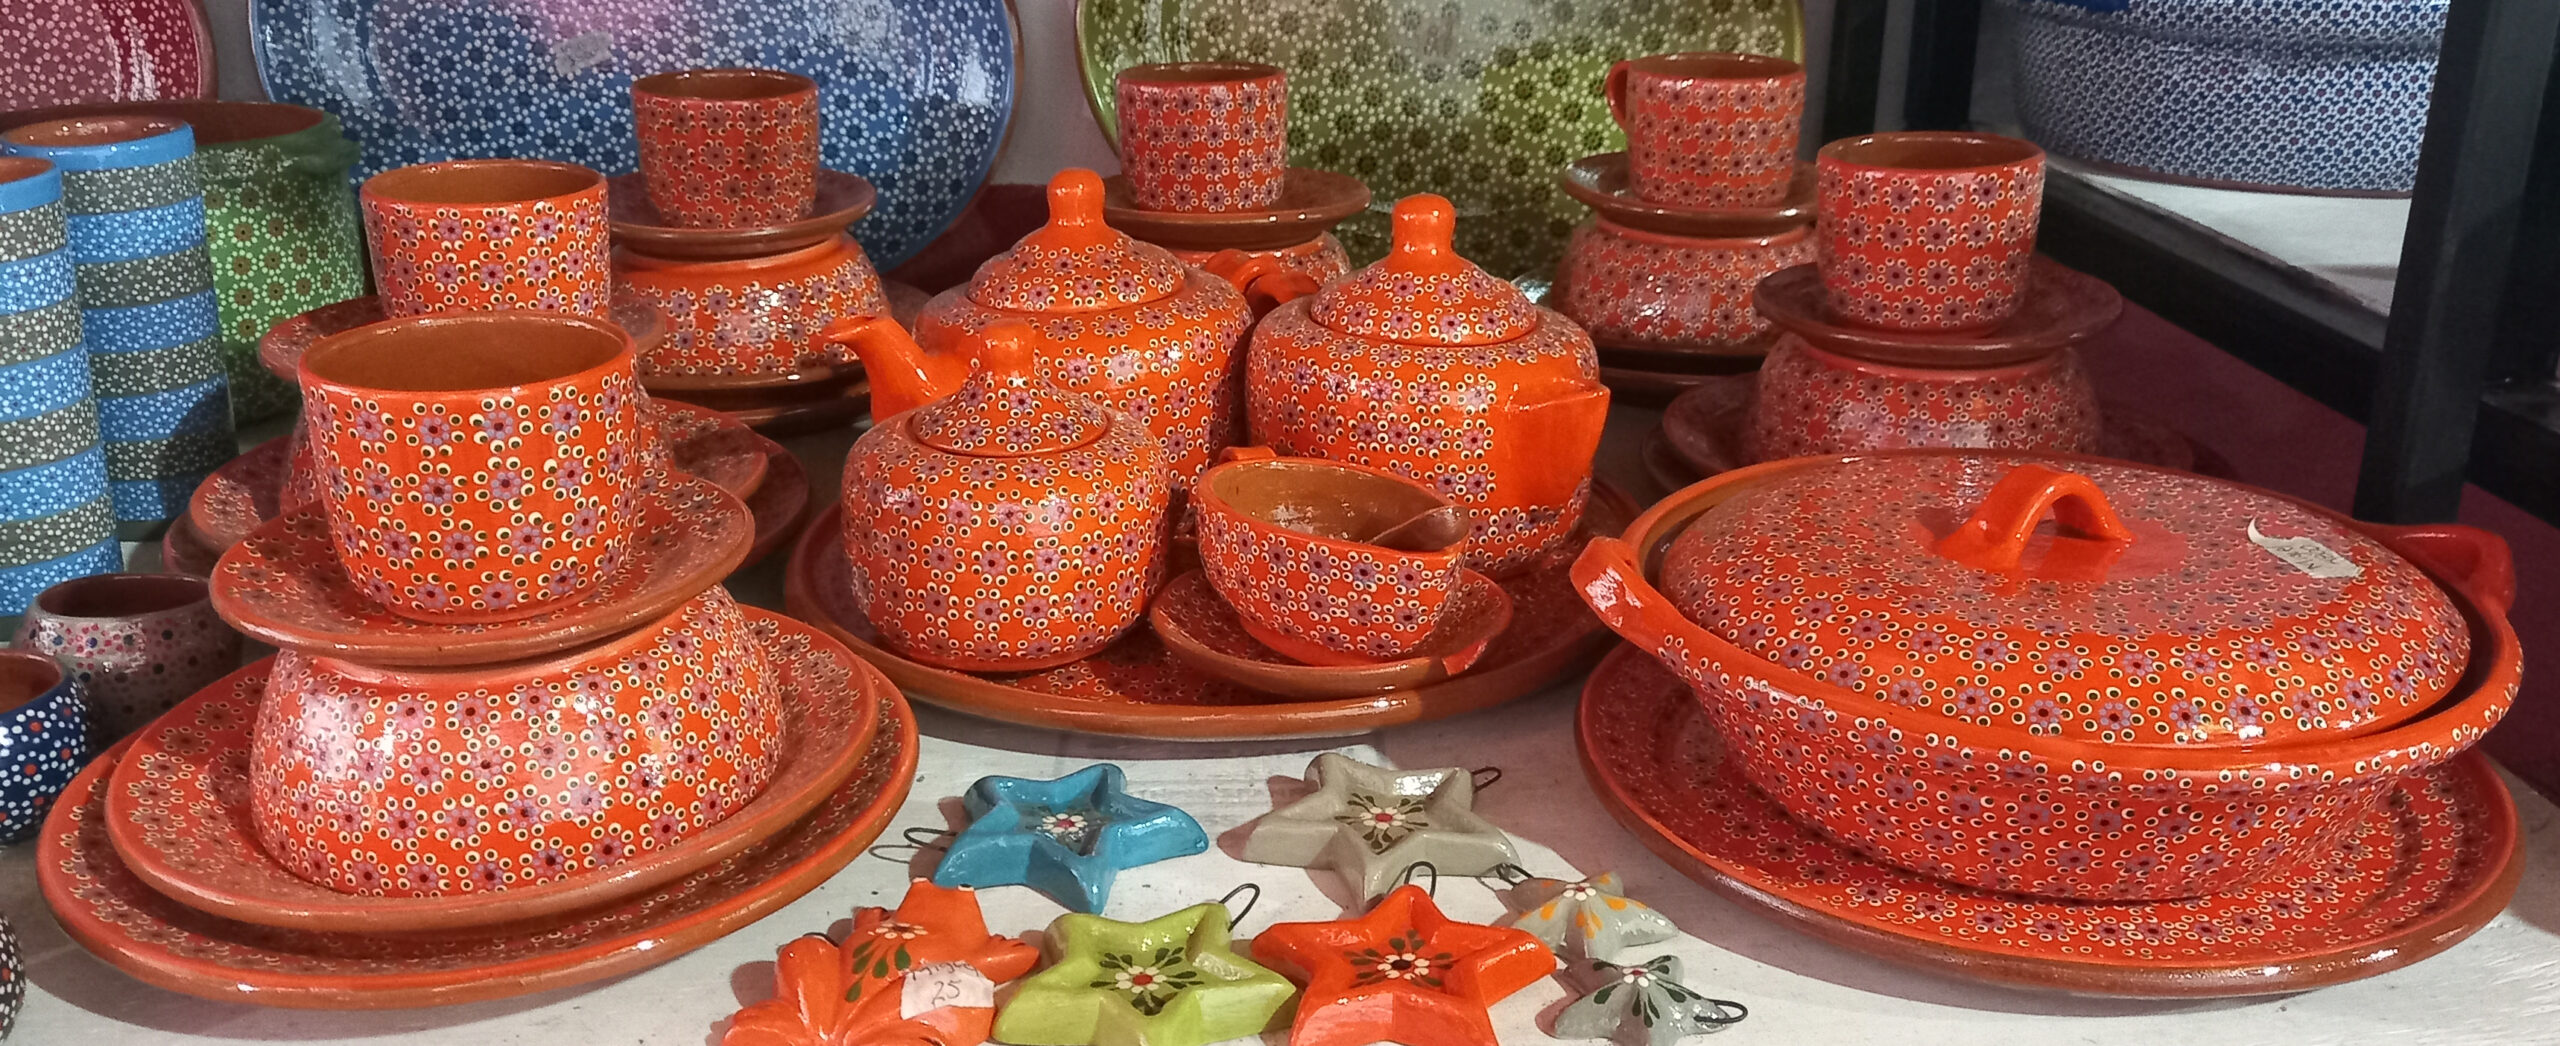 Vajilla Todos Colores 6 personas - Tienda de artesanías en cerámica